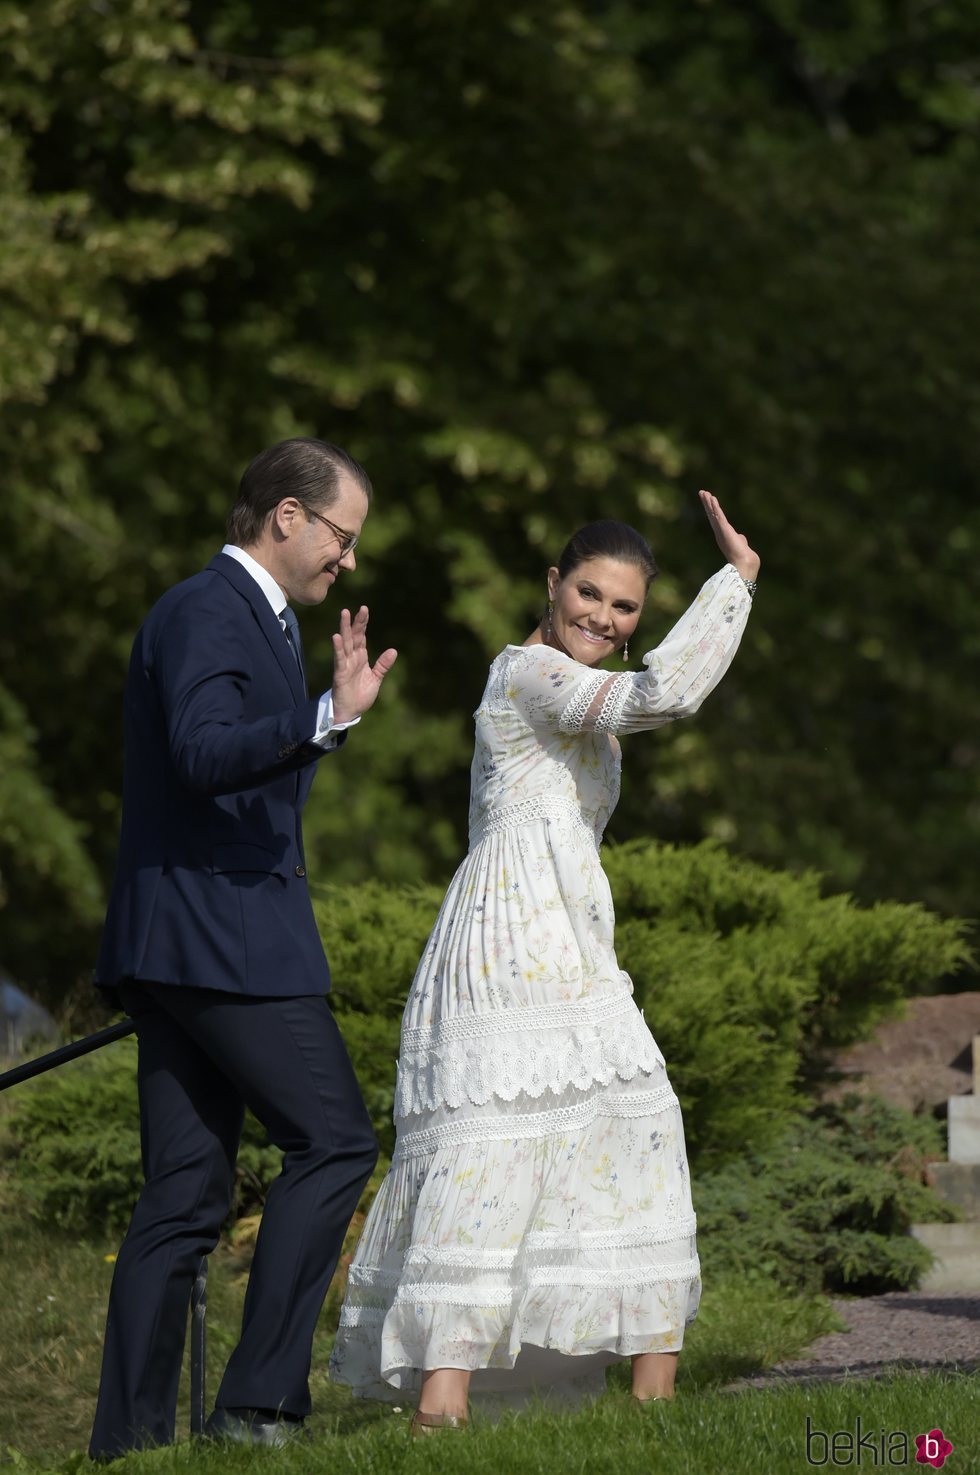 Daniel y Victoria de Suecia saludando en su 43 cumpleaños